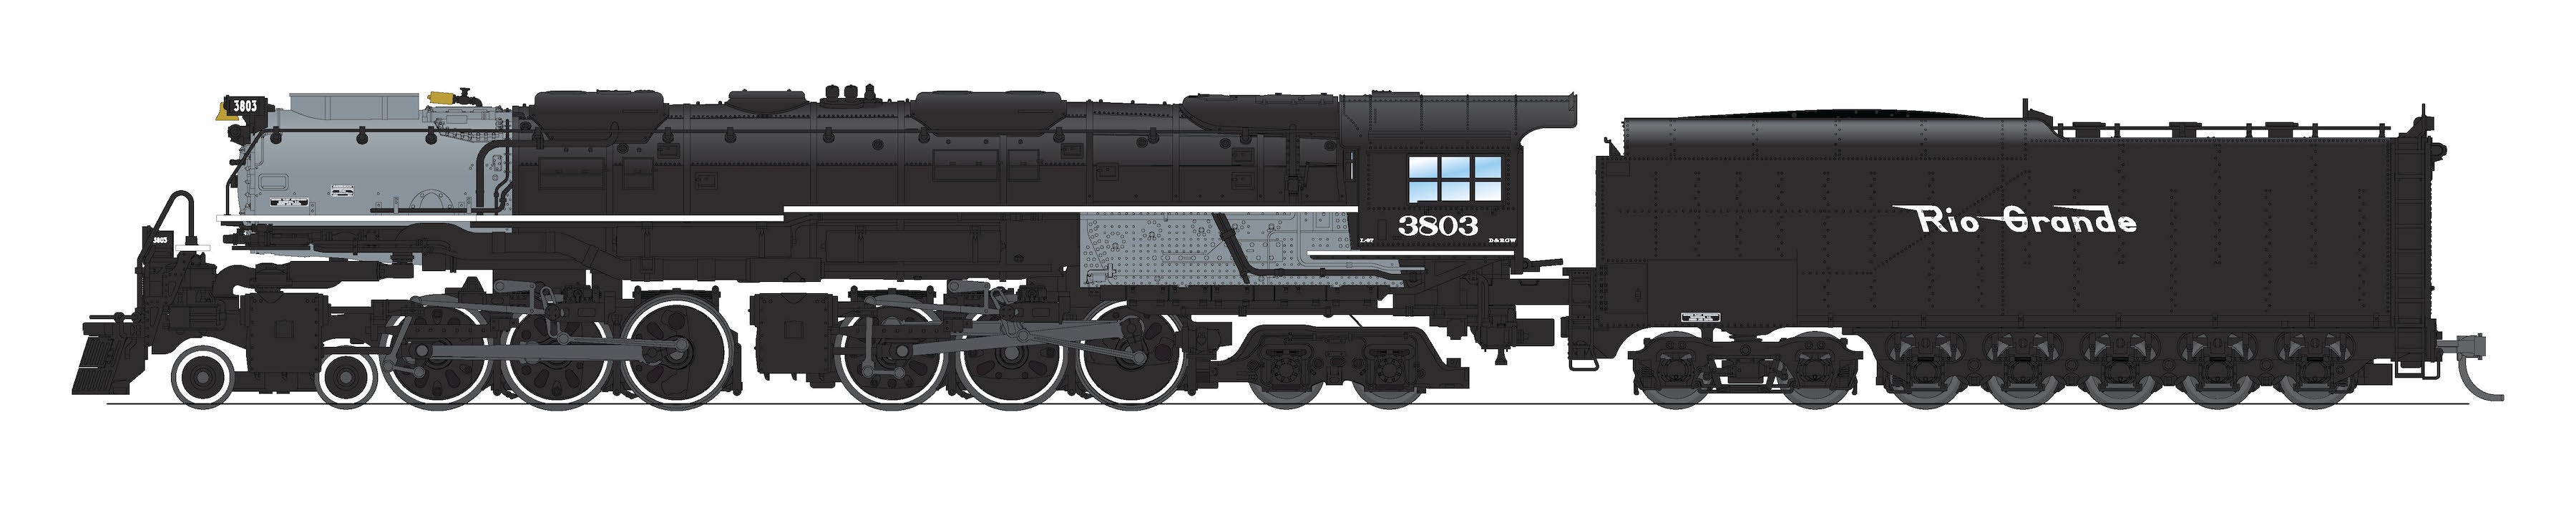 6988 D&RGW Challenger 4-6-6-4, #3805, Black & Graphite, Coal Tender, Paragon4 Sound/DC/DCC, Smoke, N